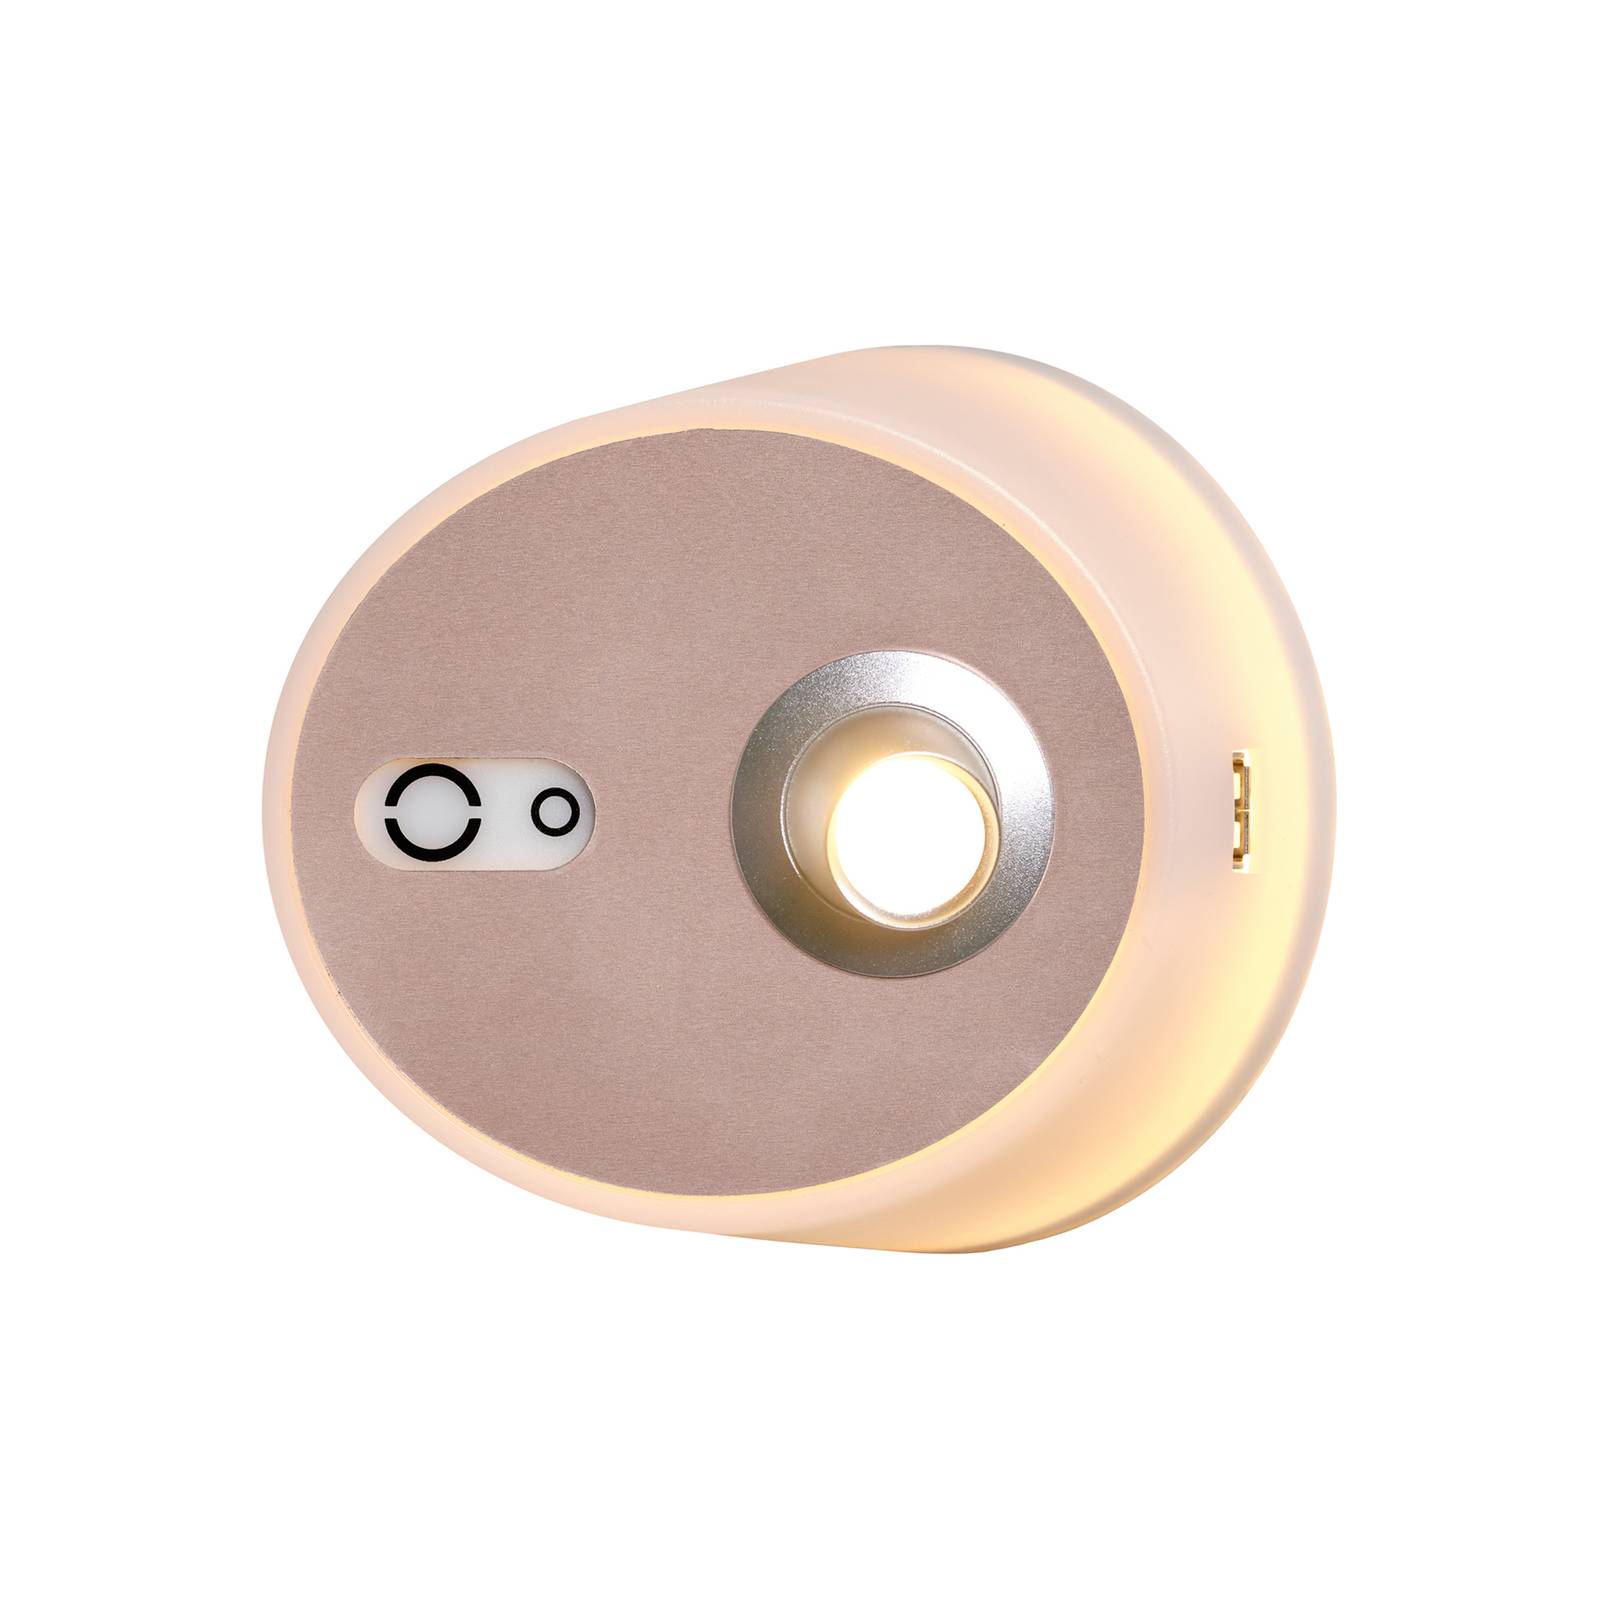 Zoom LED-væglampe spot USB-port pink-kobber